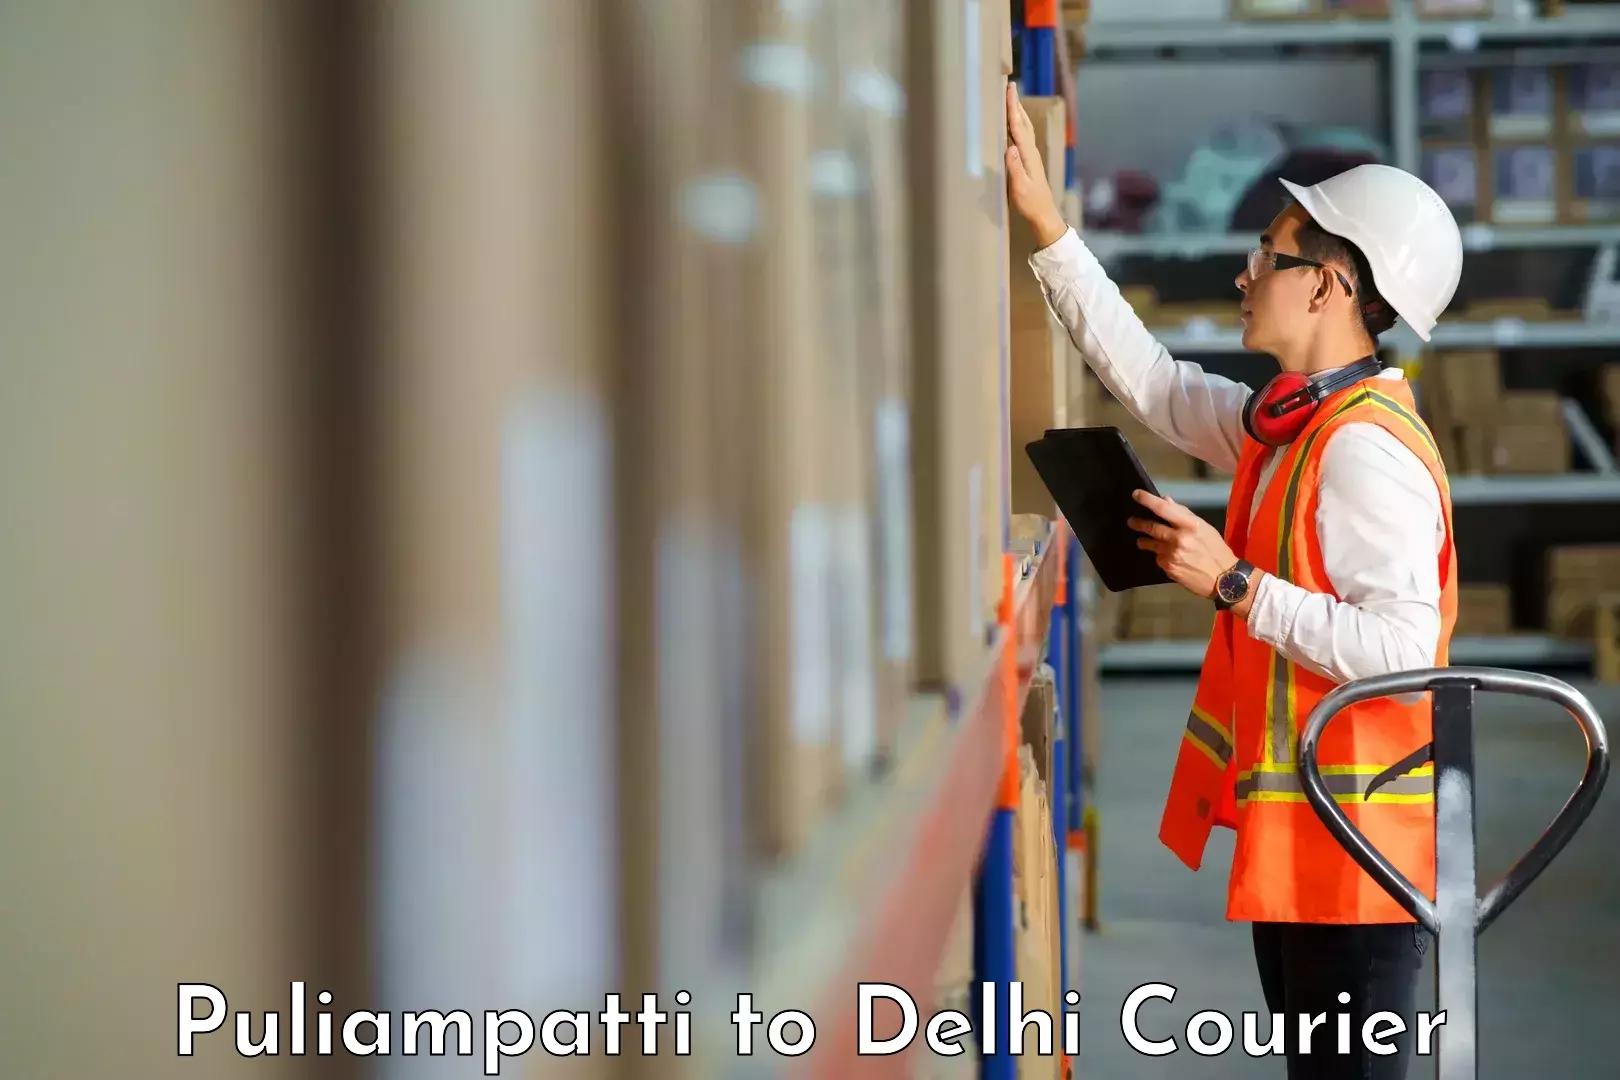 Nationwide delivery network Puliampatti to NIT Delhi